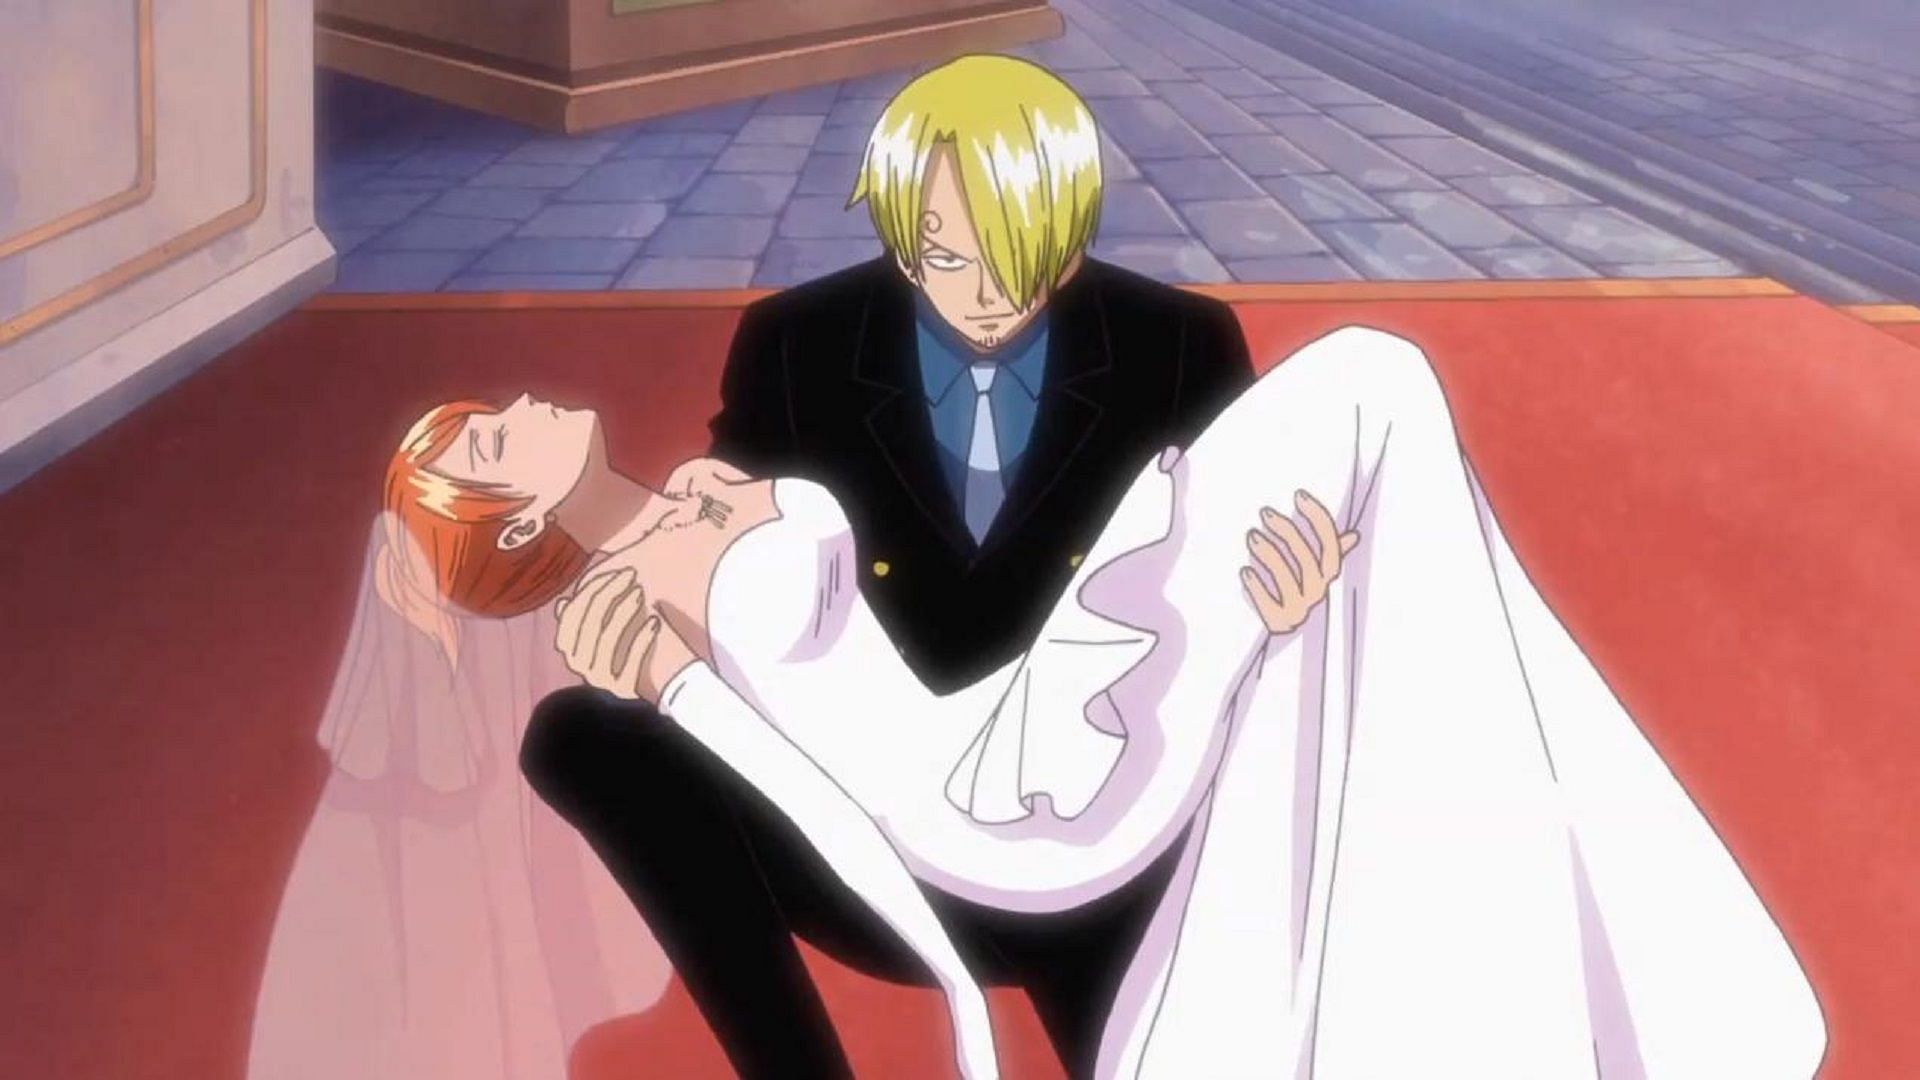 Sanji protecting Nami (Image via Toei Animation, One Piece)